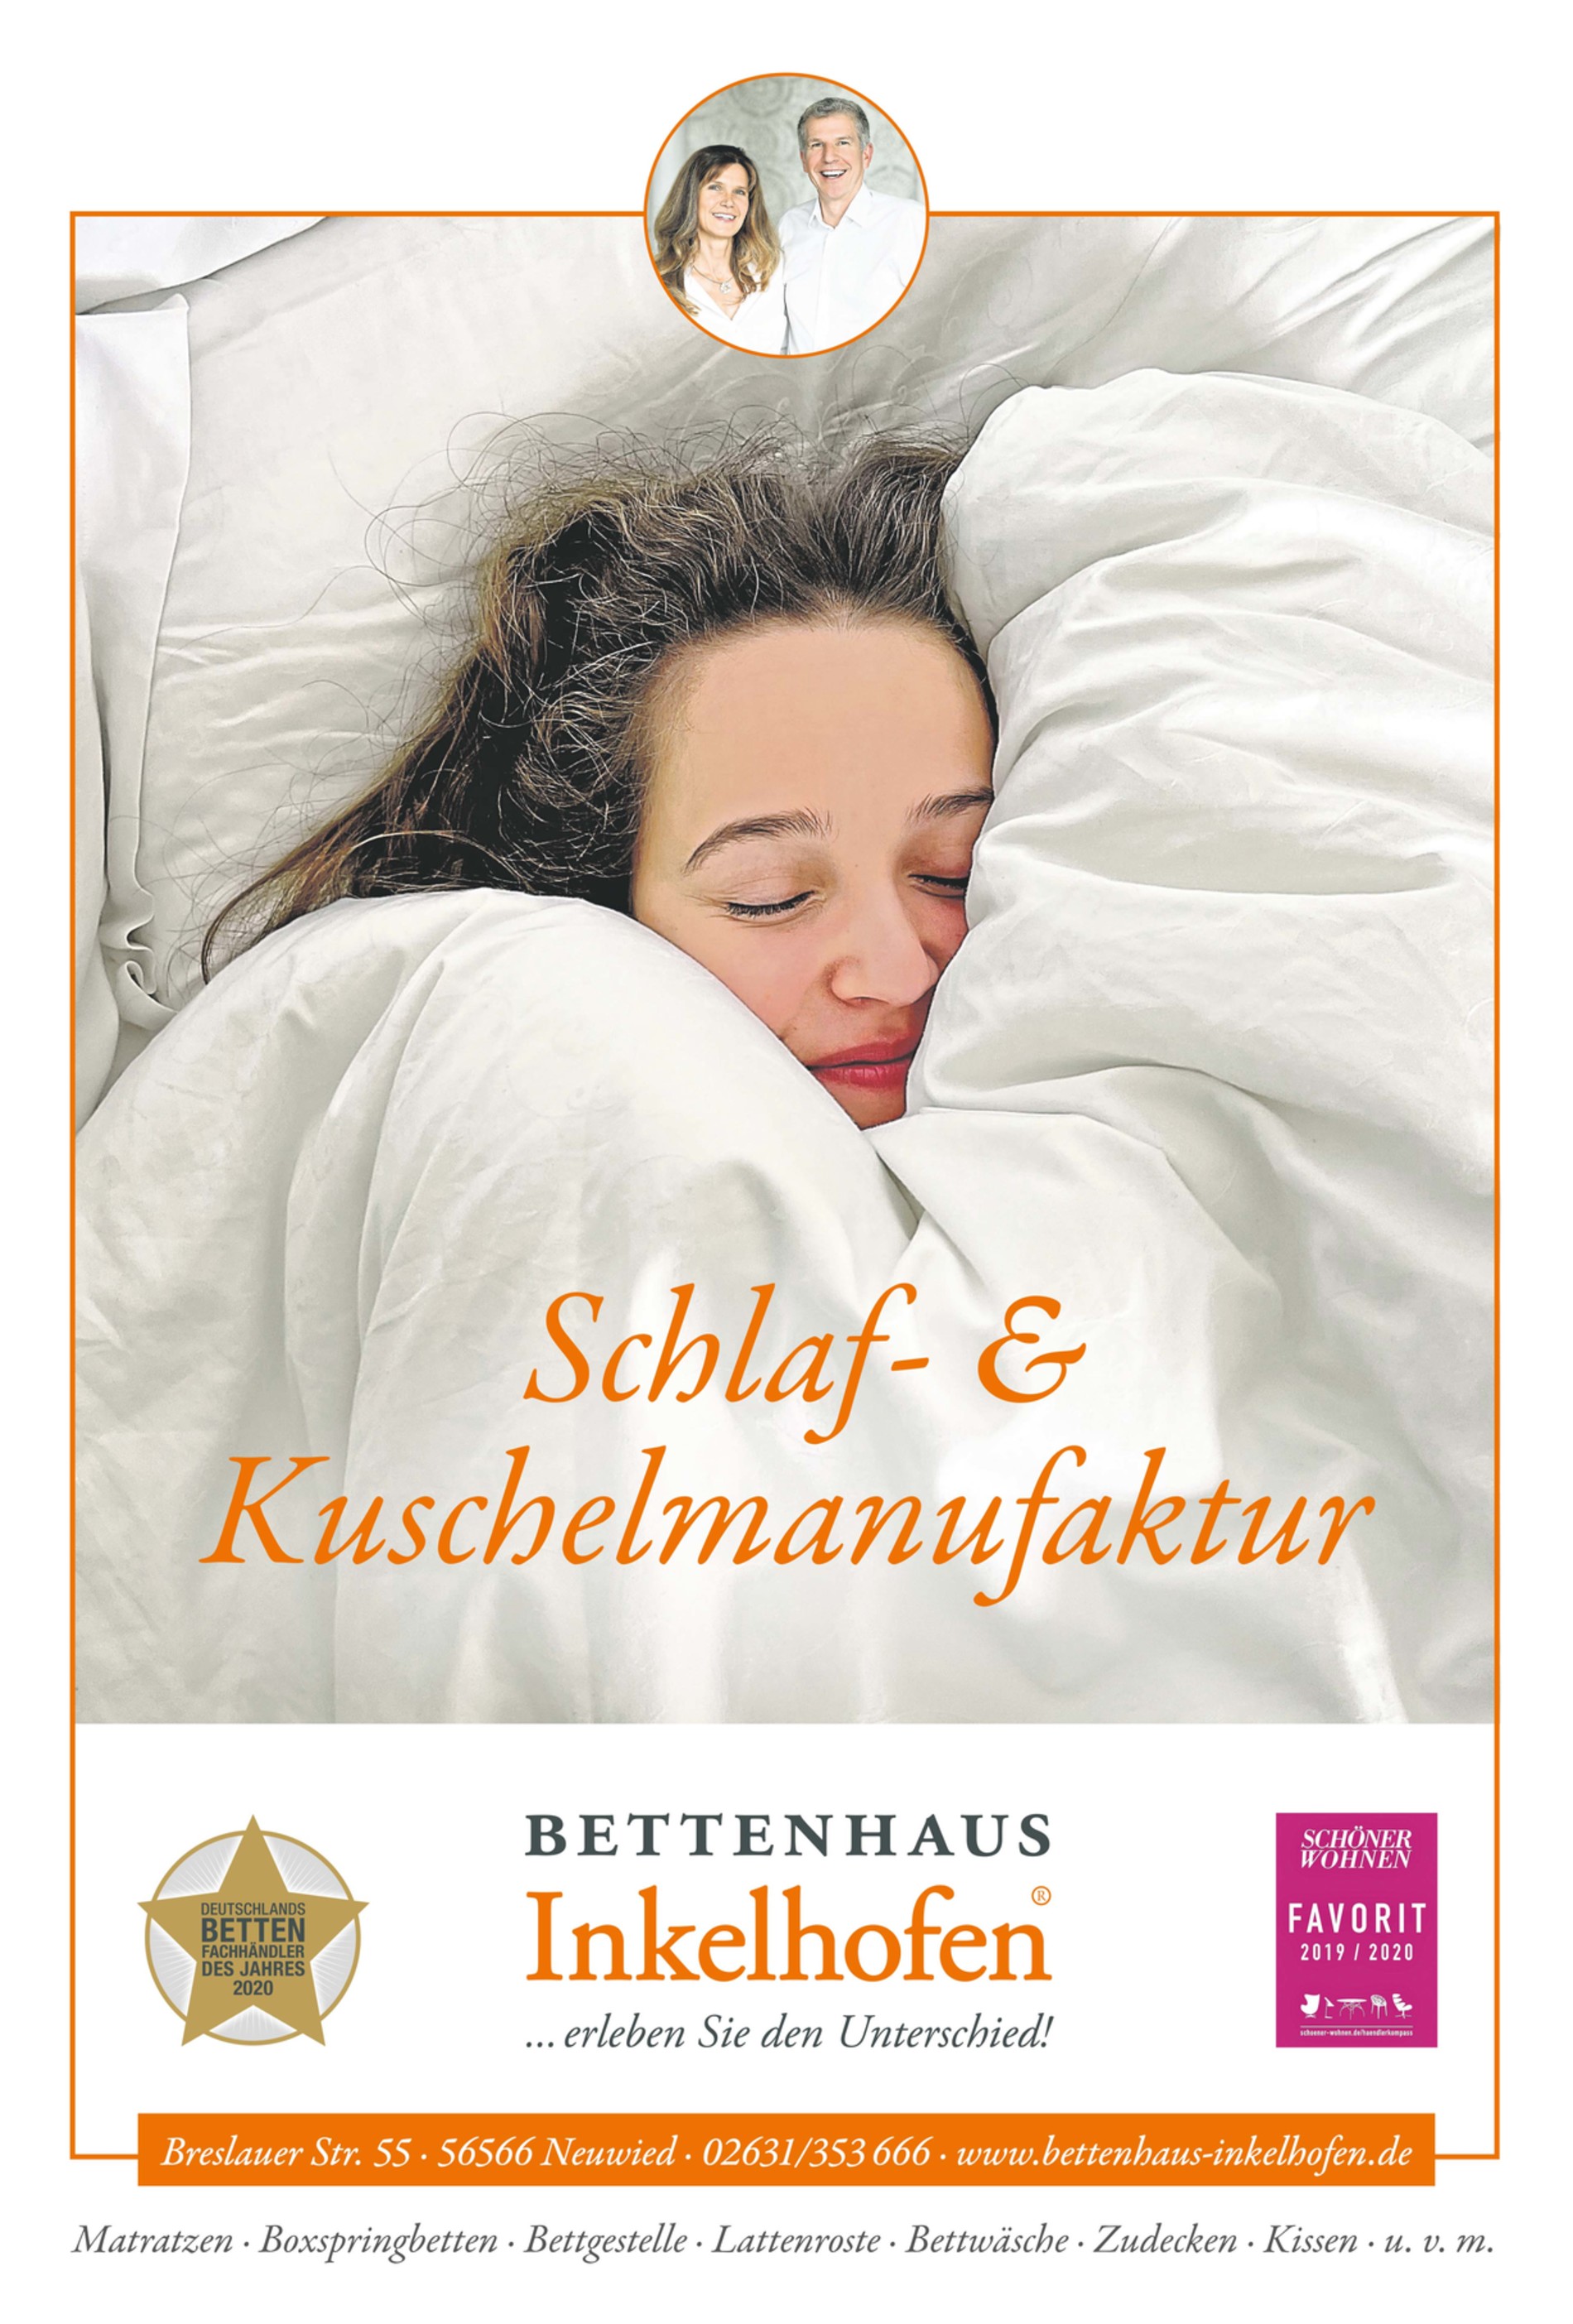 Schlaf- und Kuschelmanufaktur Inkelhofen